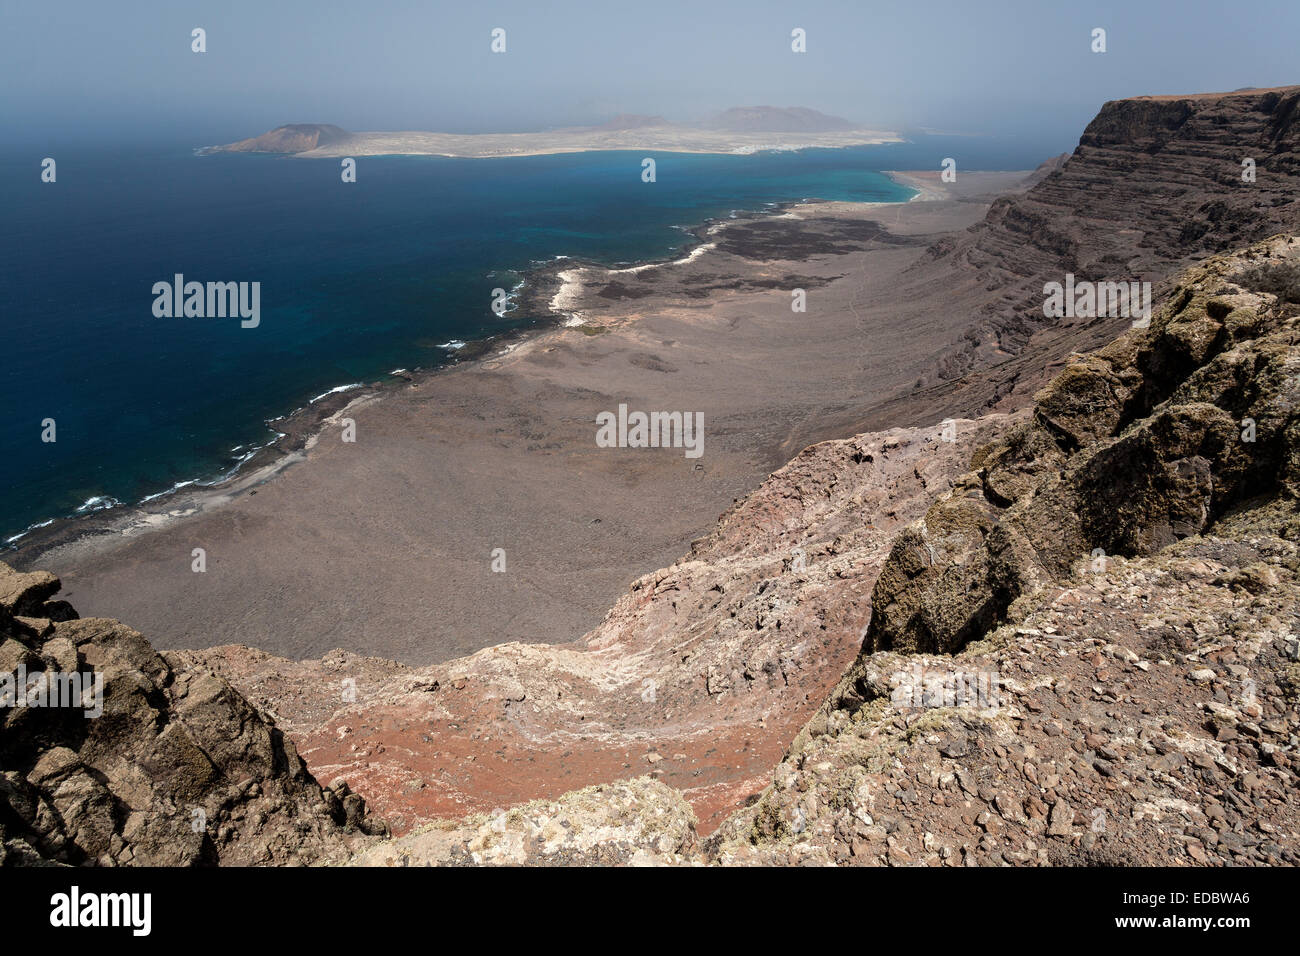 Vue depuis la falaise de Famara, Risco de Famara, de Playa del Risco beach et dans l'île de Graciosa, Lanzarote, îles Canaries, Espagne Banque D'Images